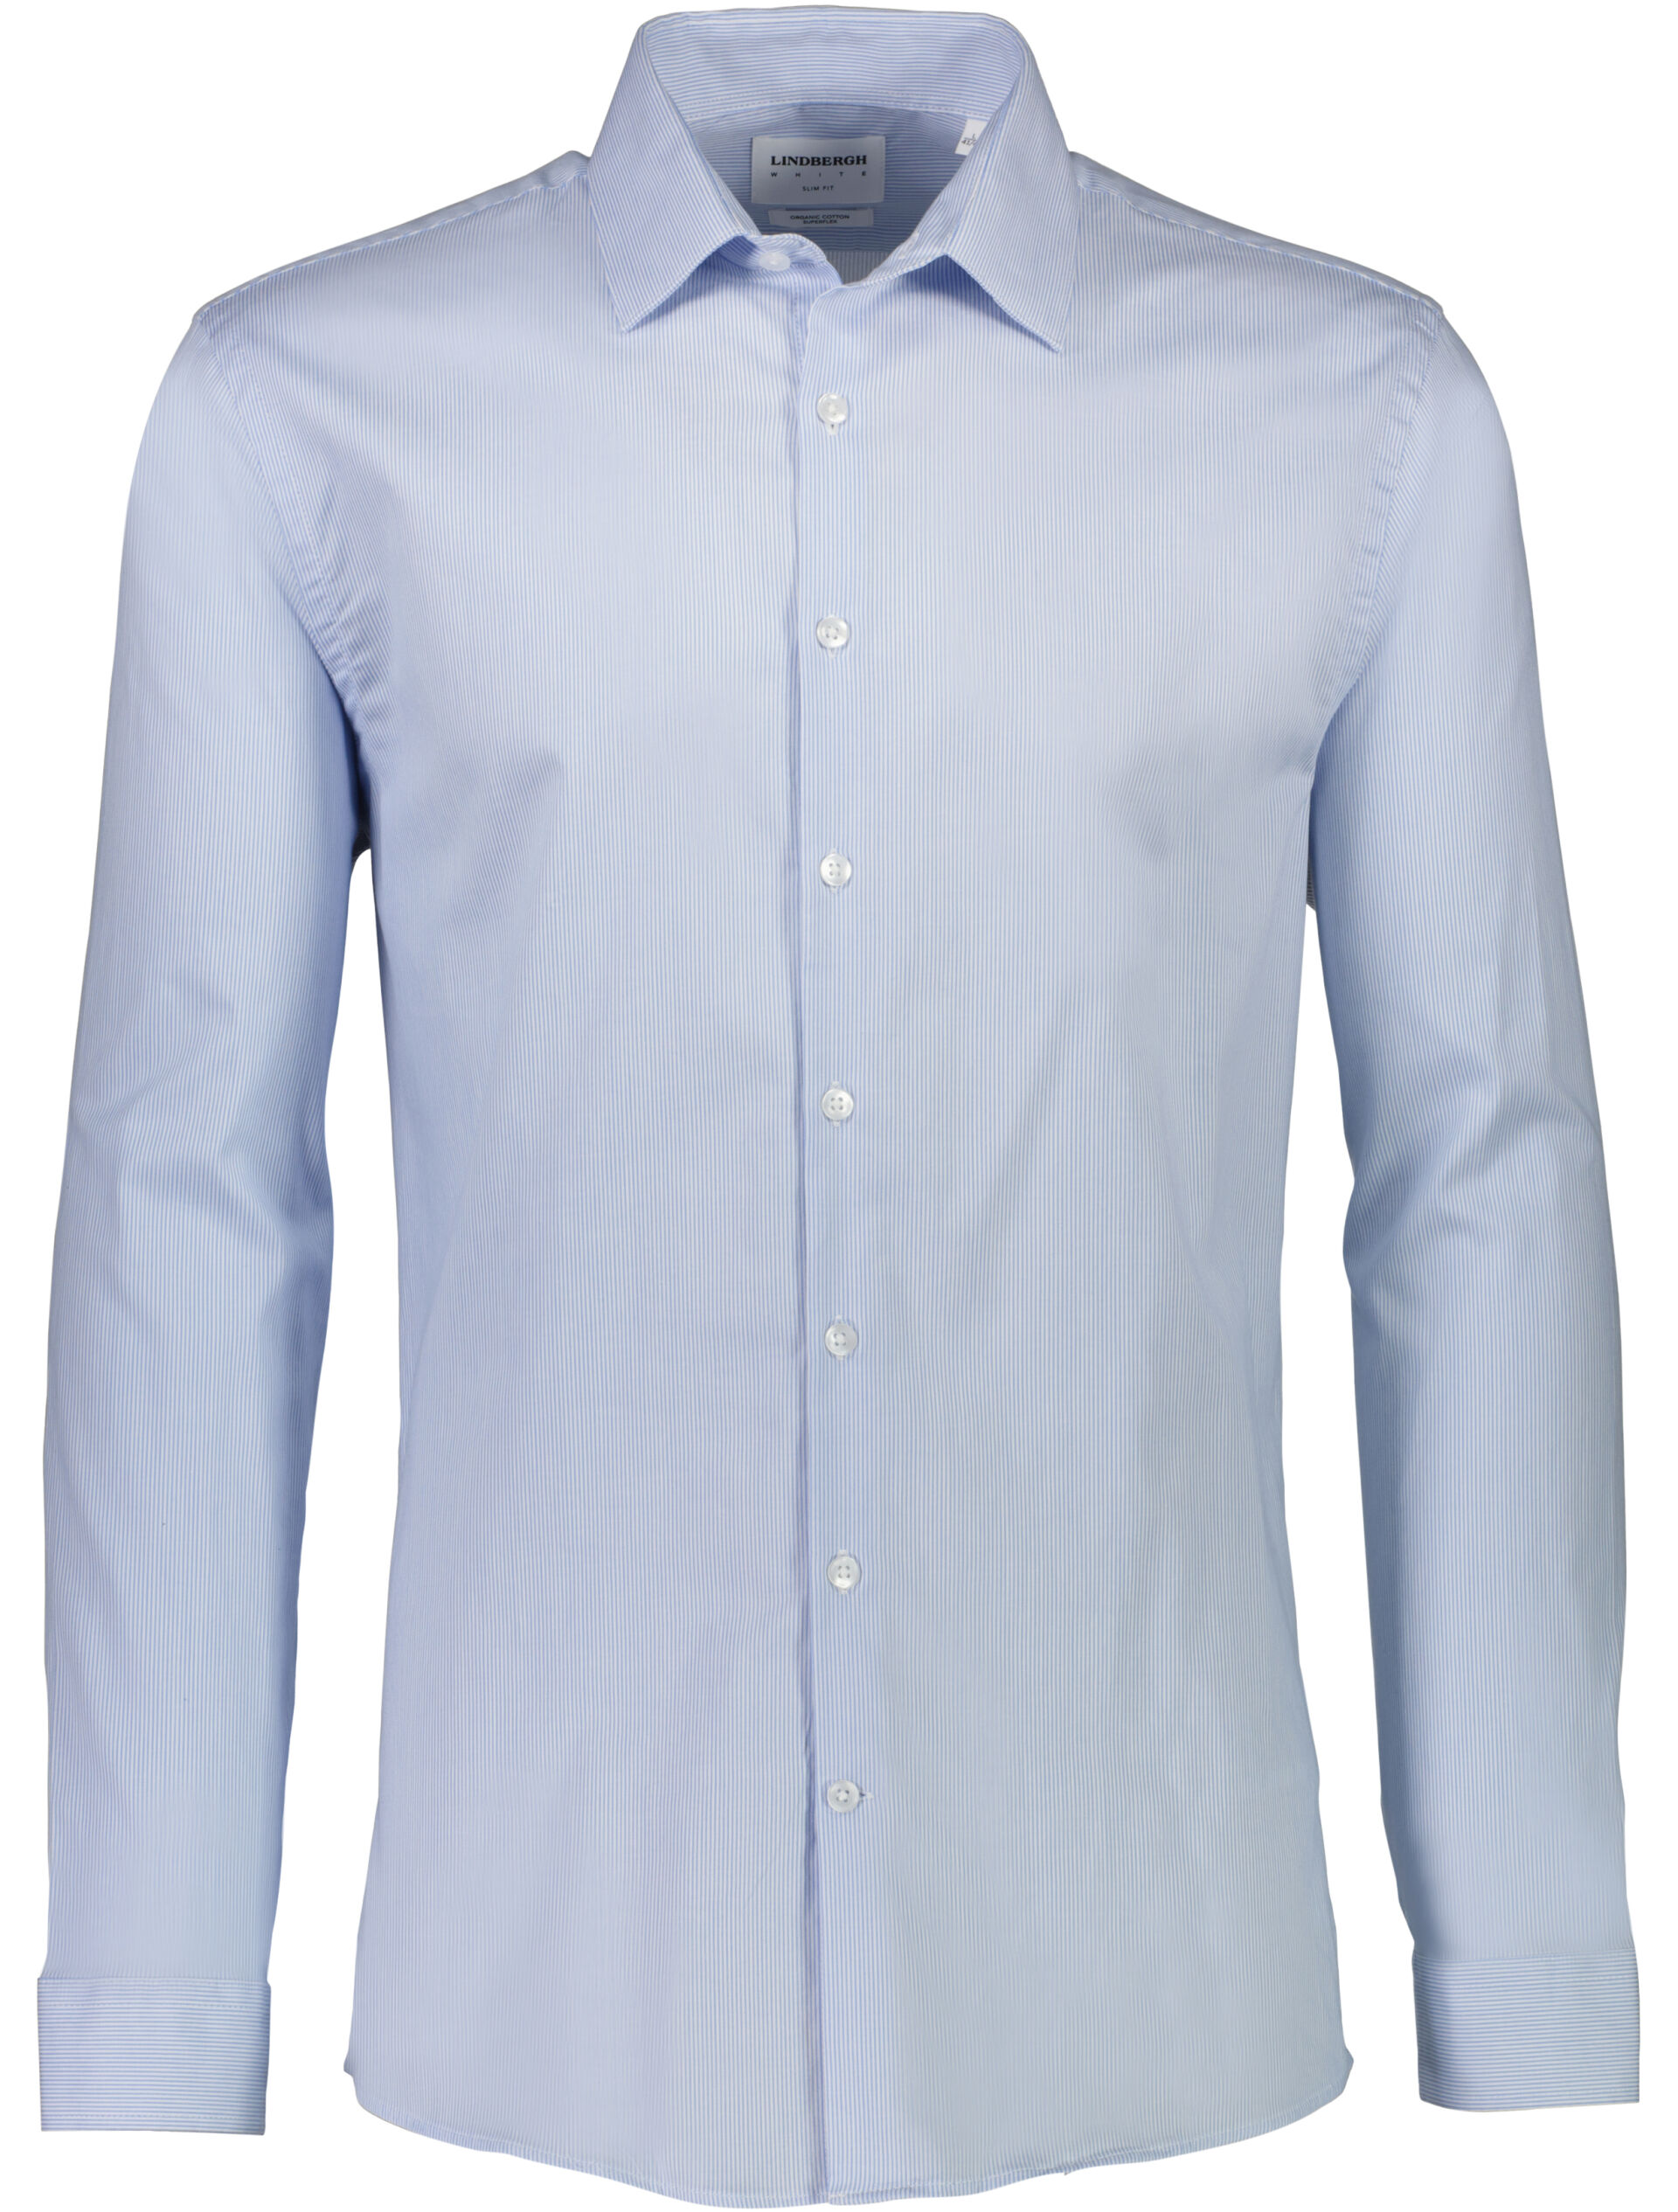 Business shirt Business shirt Blue 30-203312